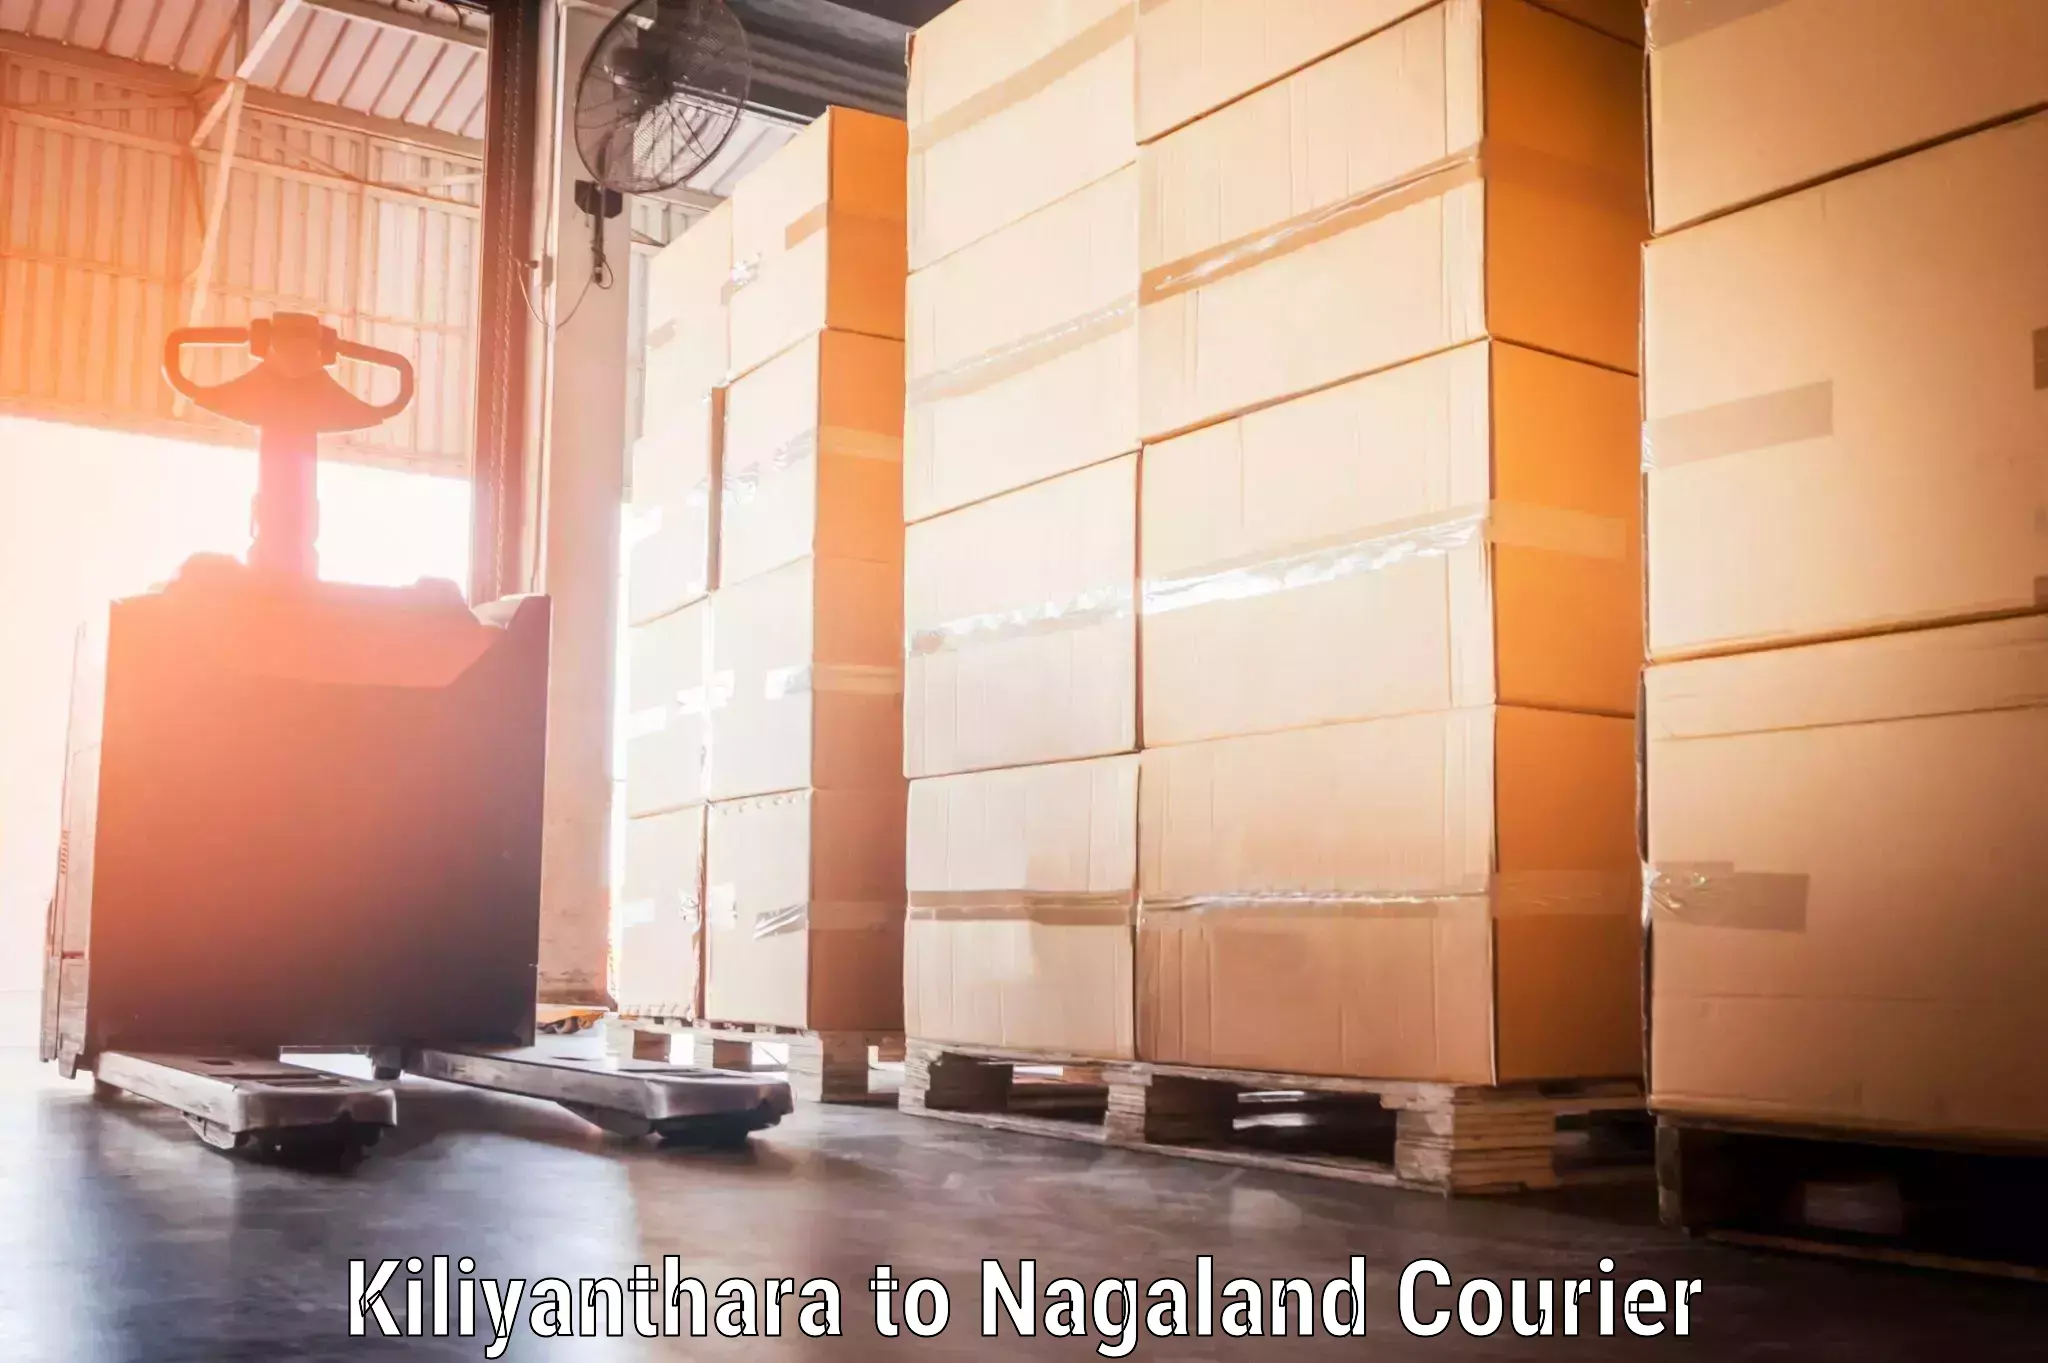 Baggage shipping experts Kiliyanthara to NIT Nagaland